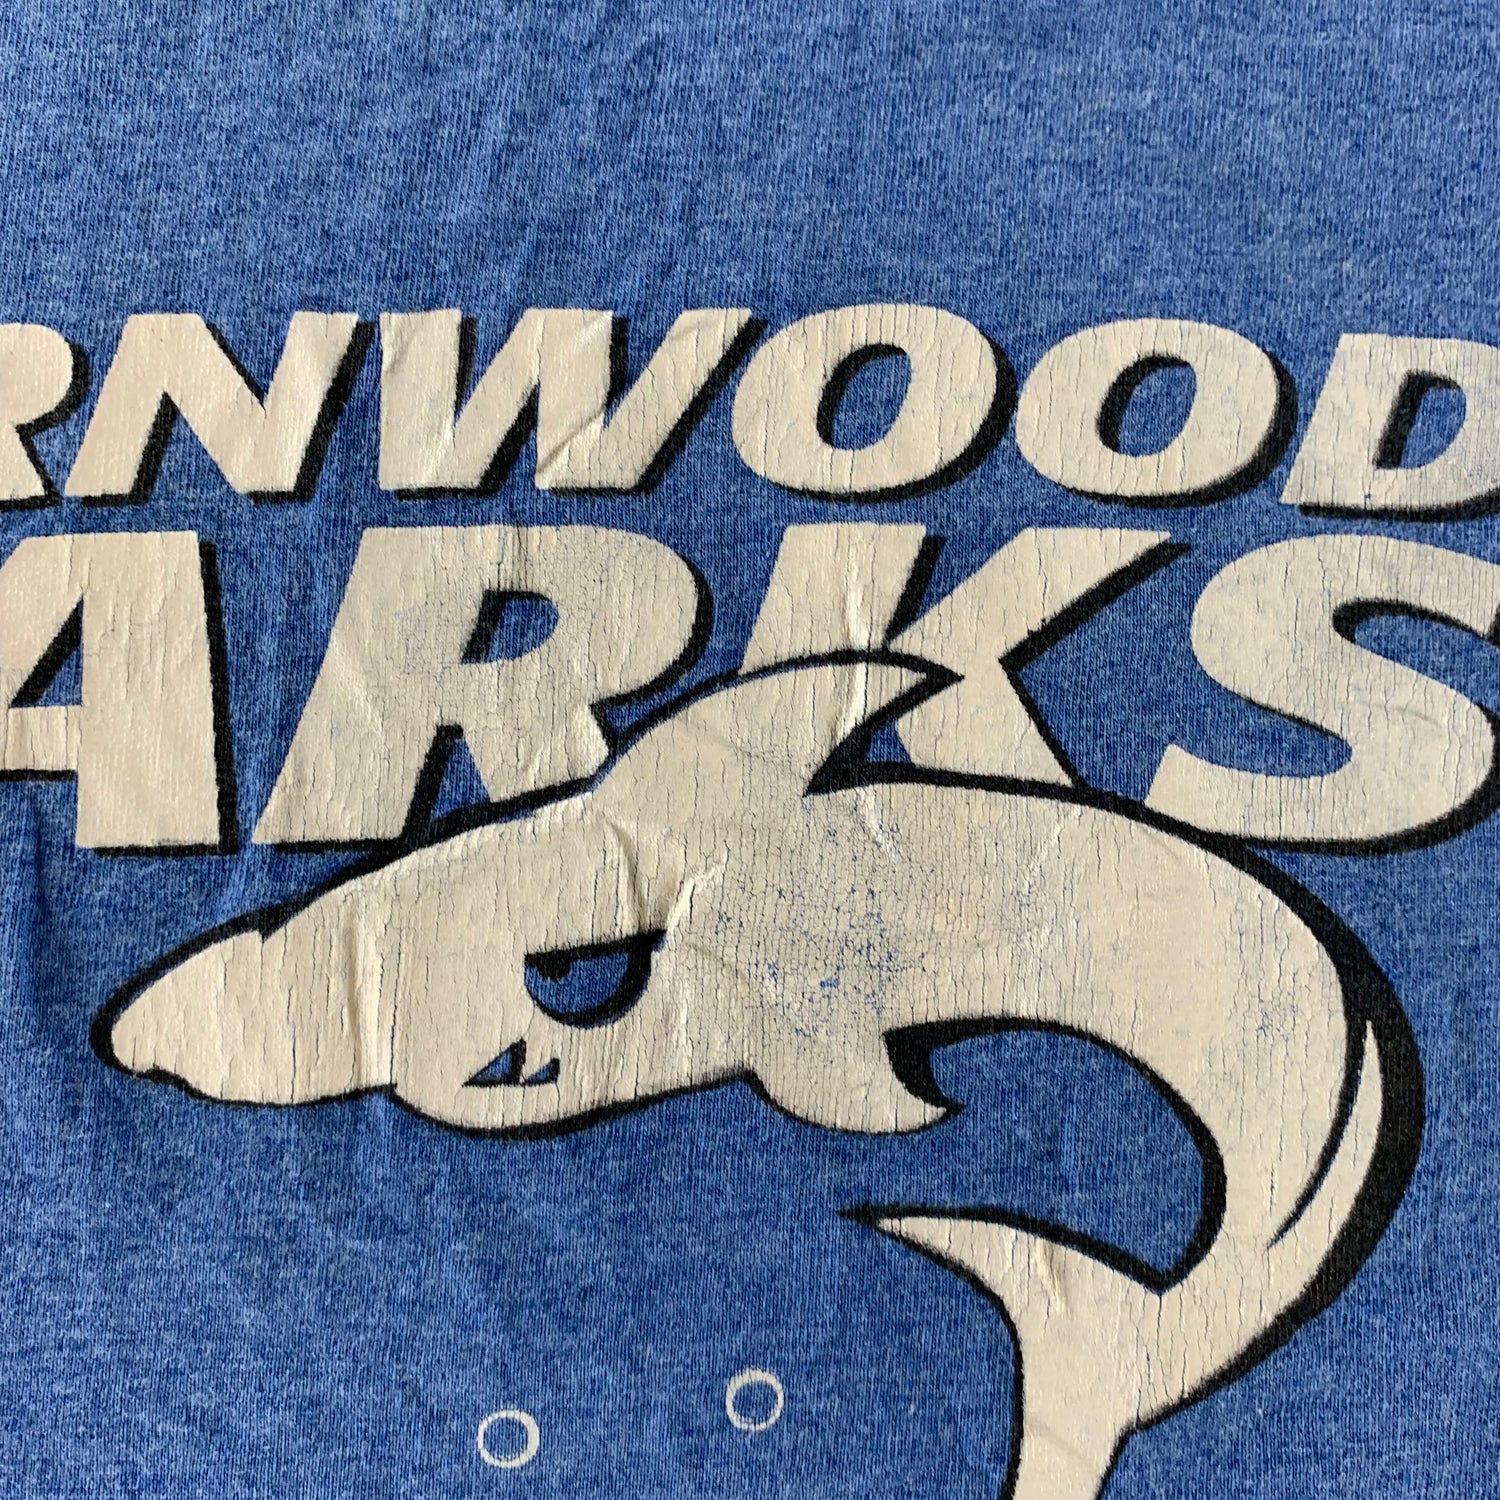 Vintage 1990s Thornwood Sharks T-shirt size Medium